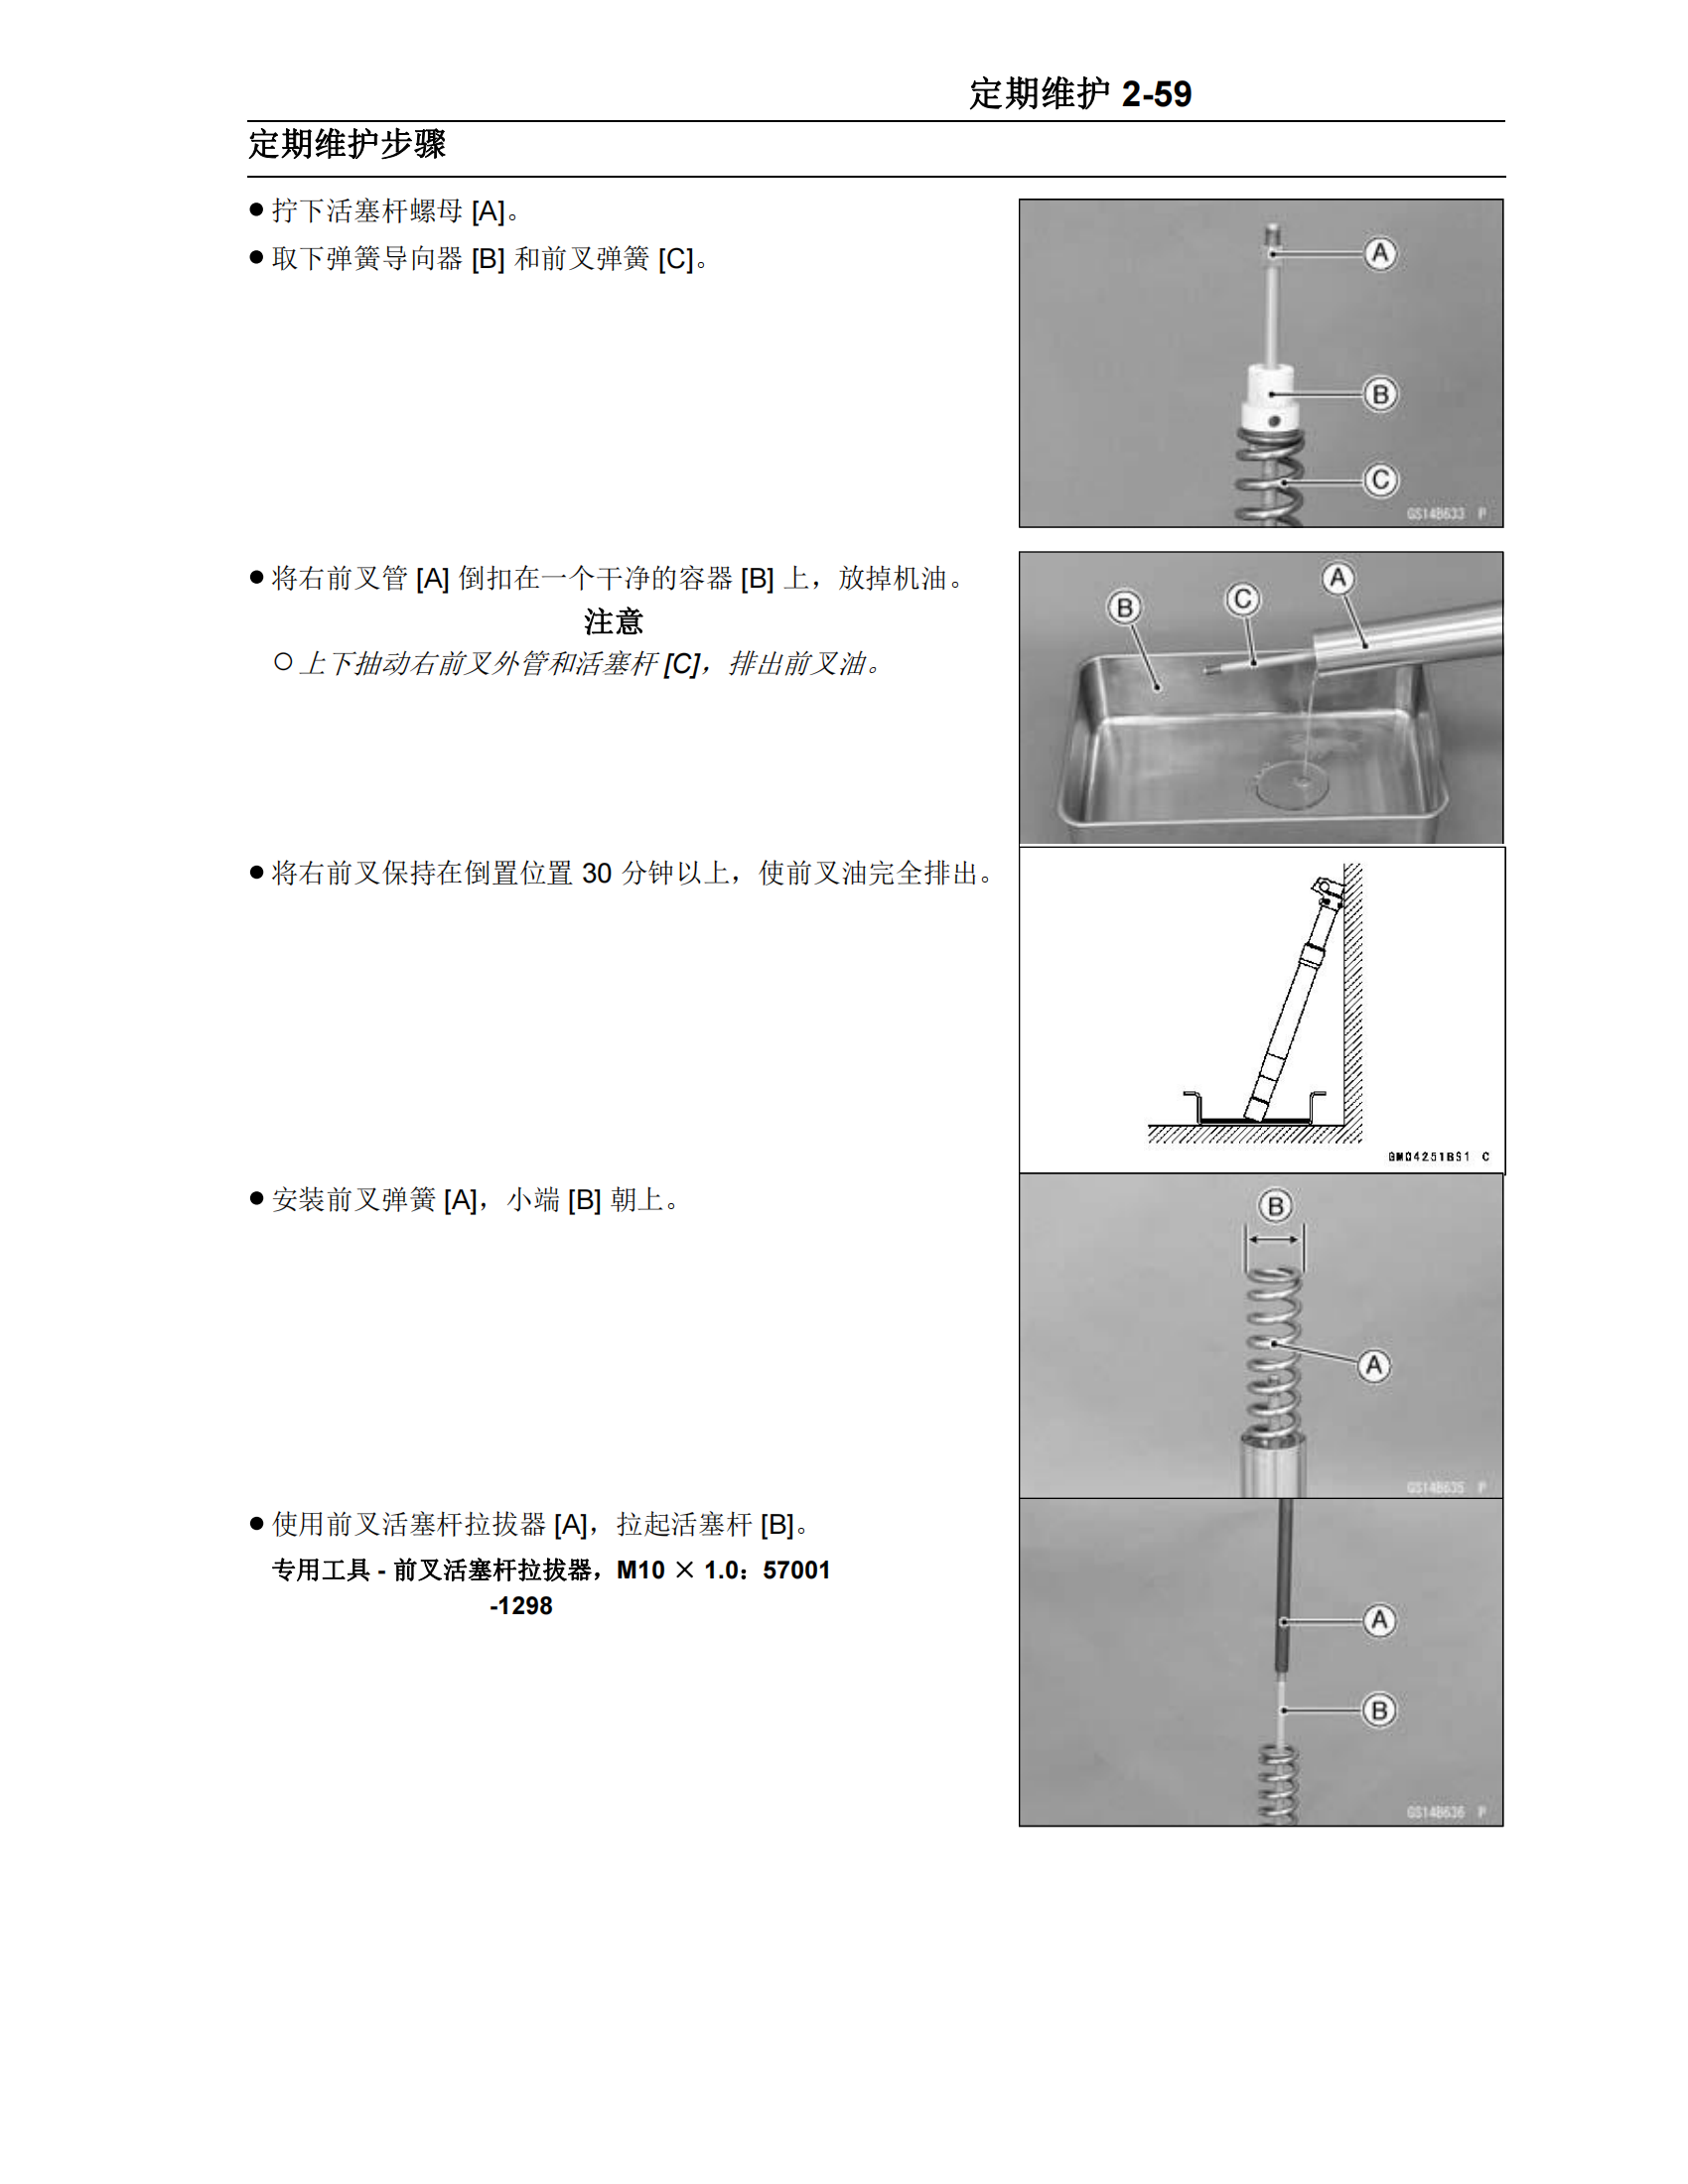 简体中文2011-2012年川崎kx250f维修手册 kawasaki kx250f维修手册插图4